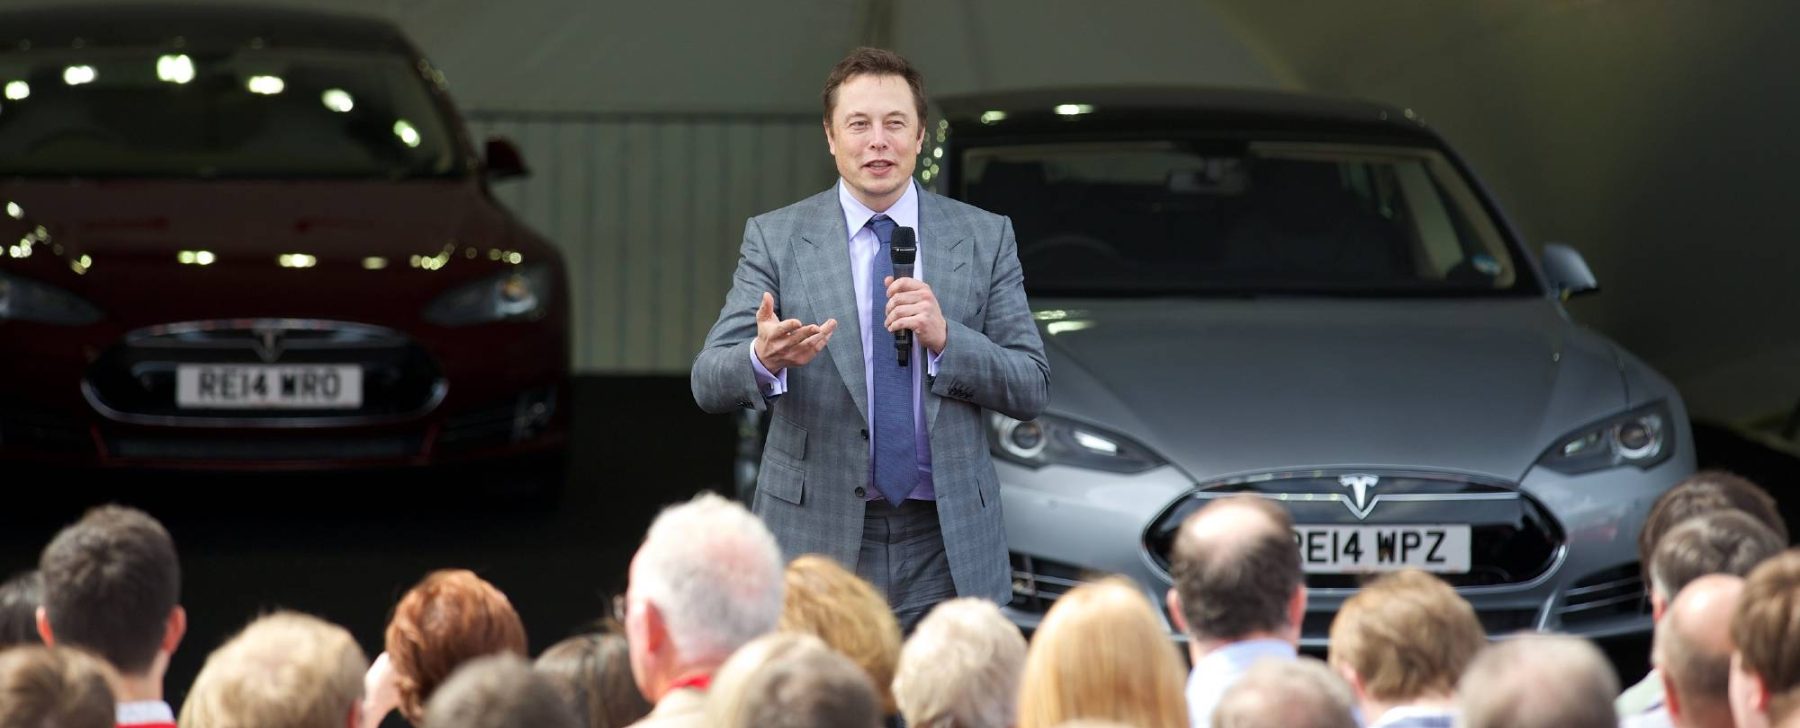 tesla - kia - hyundai - carros elétricos - Elon Musk